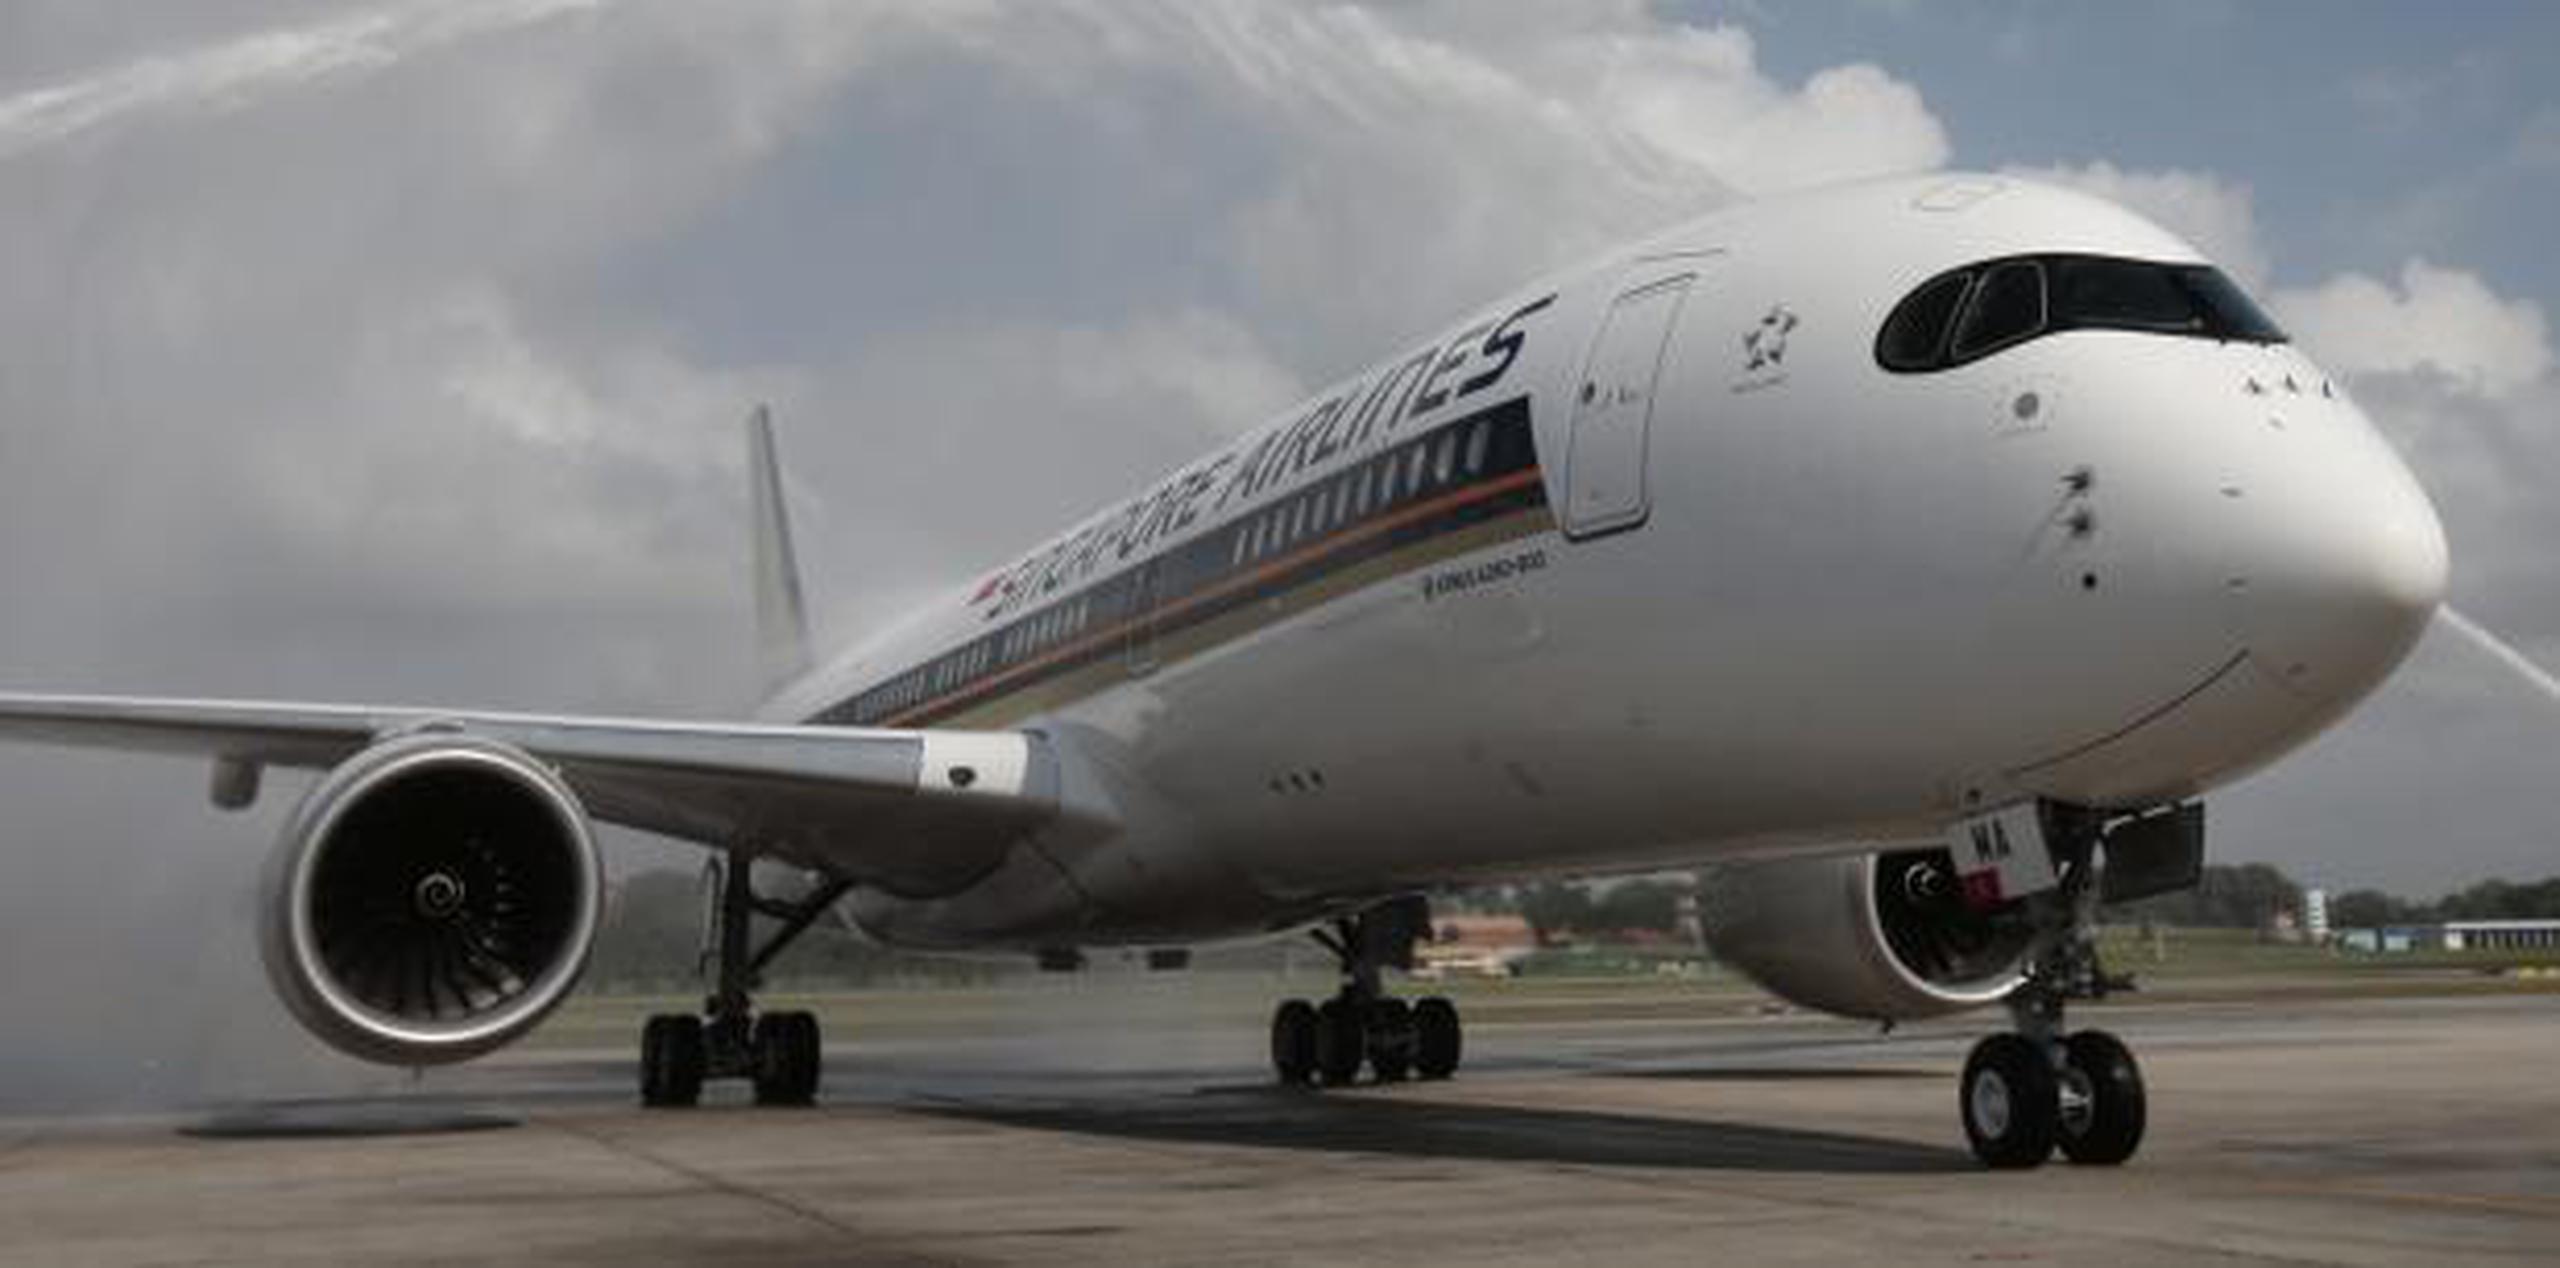 Singapore Airlines inició el vuelo en 2004 pero lo canceló nueve años después debido al alto precio del combustible. (EFE / Wallace Woon)